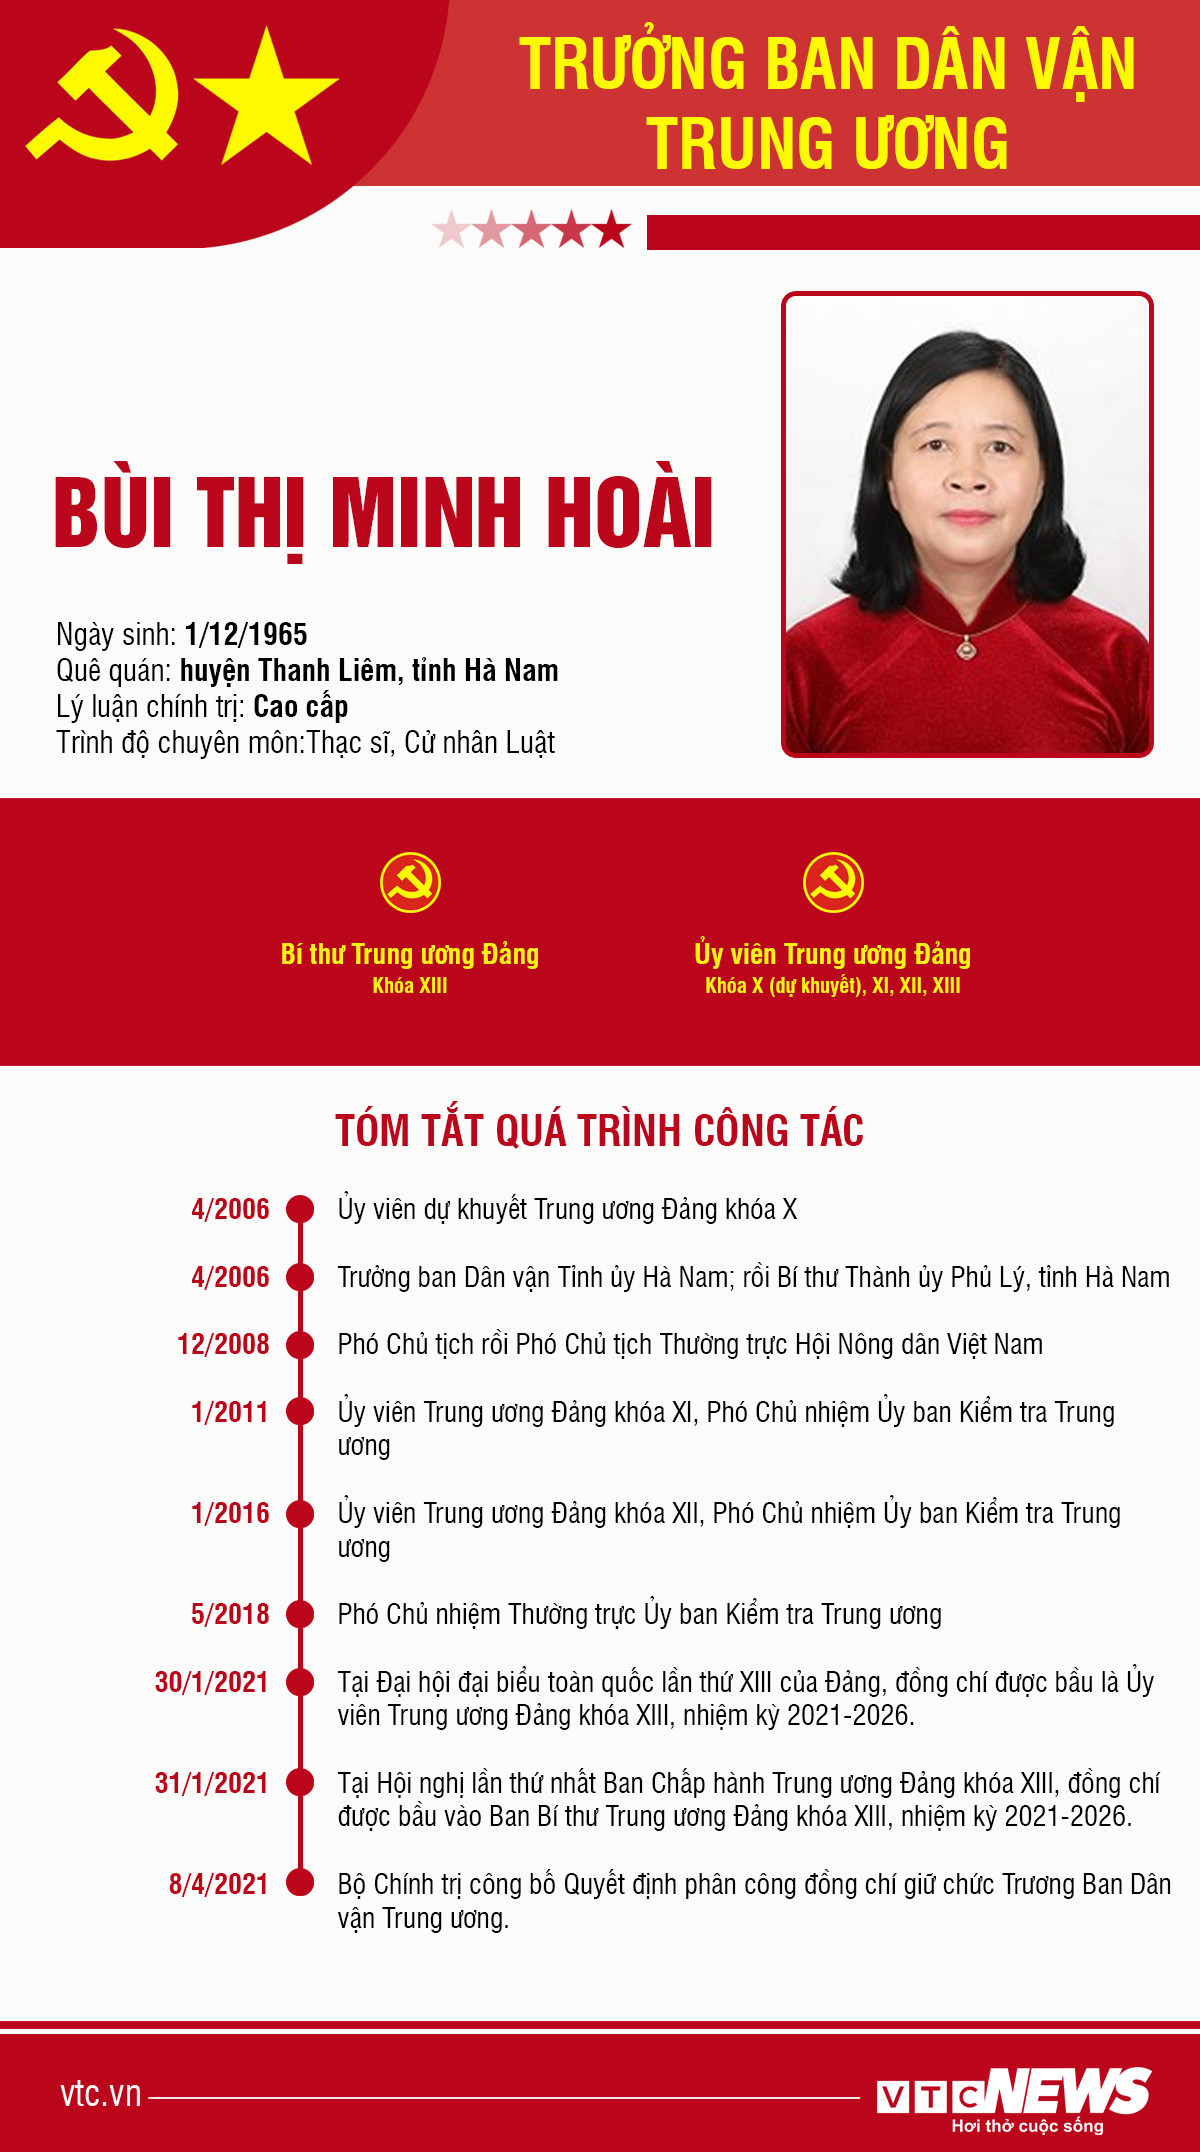 Infographic: Sự nghiệp Trưởng ban Dân vận Trung ương Bùi Thị Minh Hoài - 1